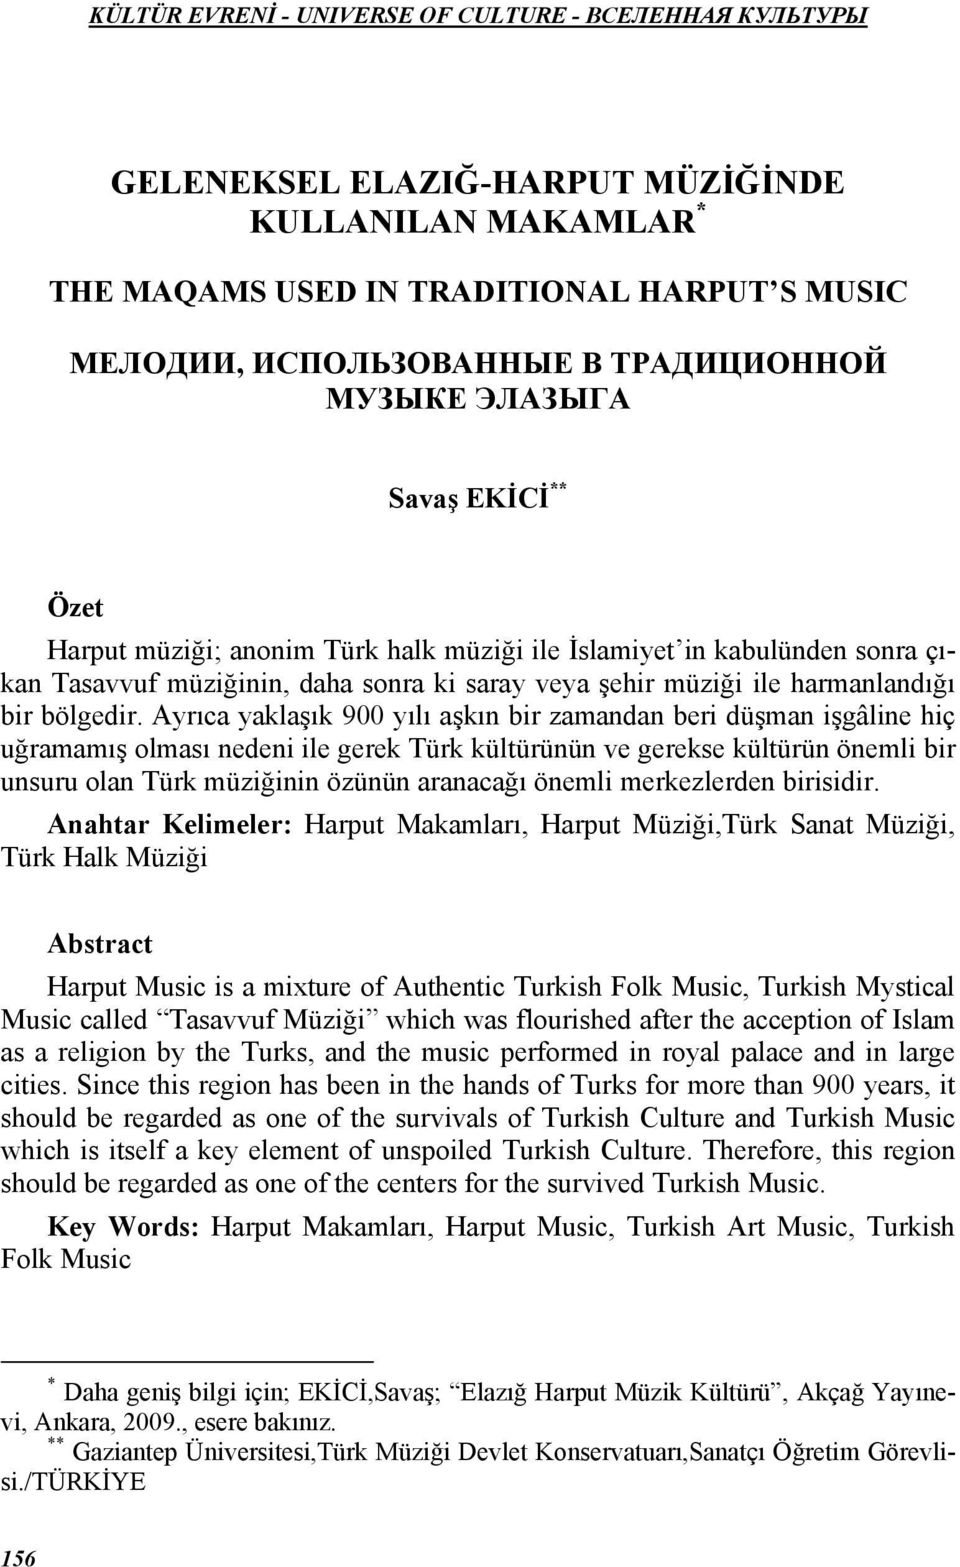 Ayrıca yaklaşık 900 yılı aşkın bir zamandan beri düşman işgâline hiç uğramamış olması nedeni ile gerek Türk kültürünün ve gerekse kültürün önemli bir unsuru olan Türk müziğinin özünün aranacağı